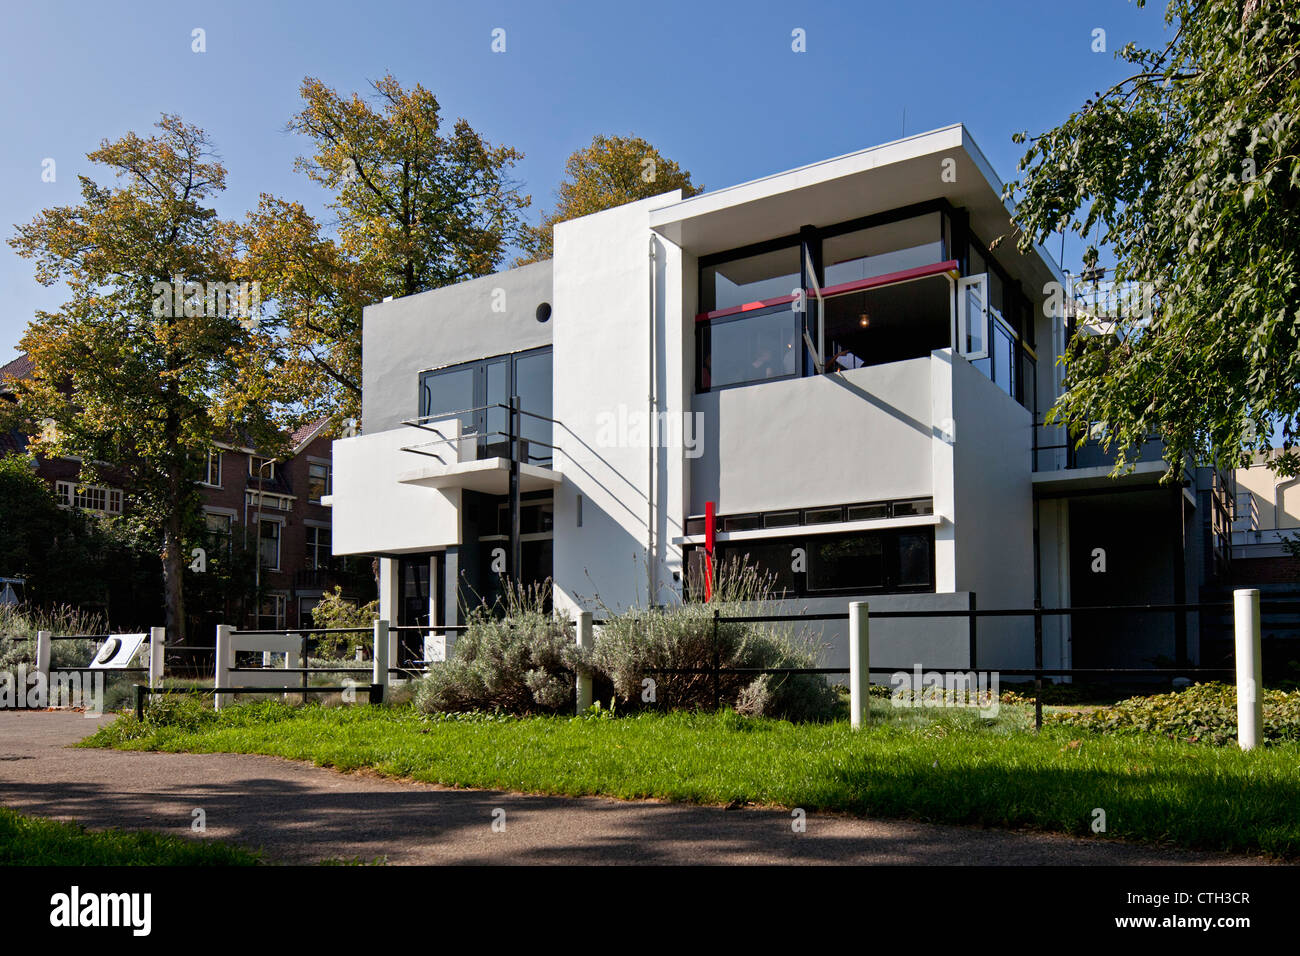 Les Pays-Bas, Utrecht, Rietveld maison Schrosder. UNESCO World Heritage Site. Banque D'Images